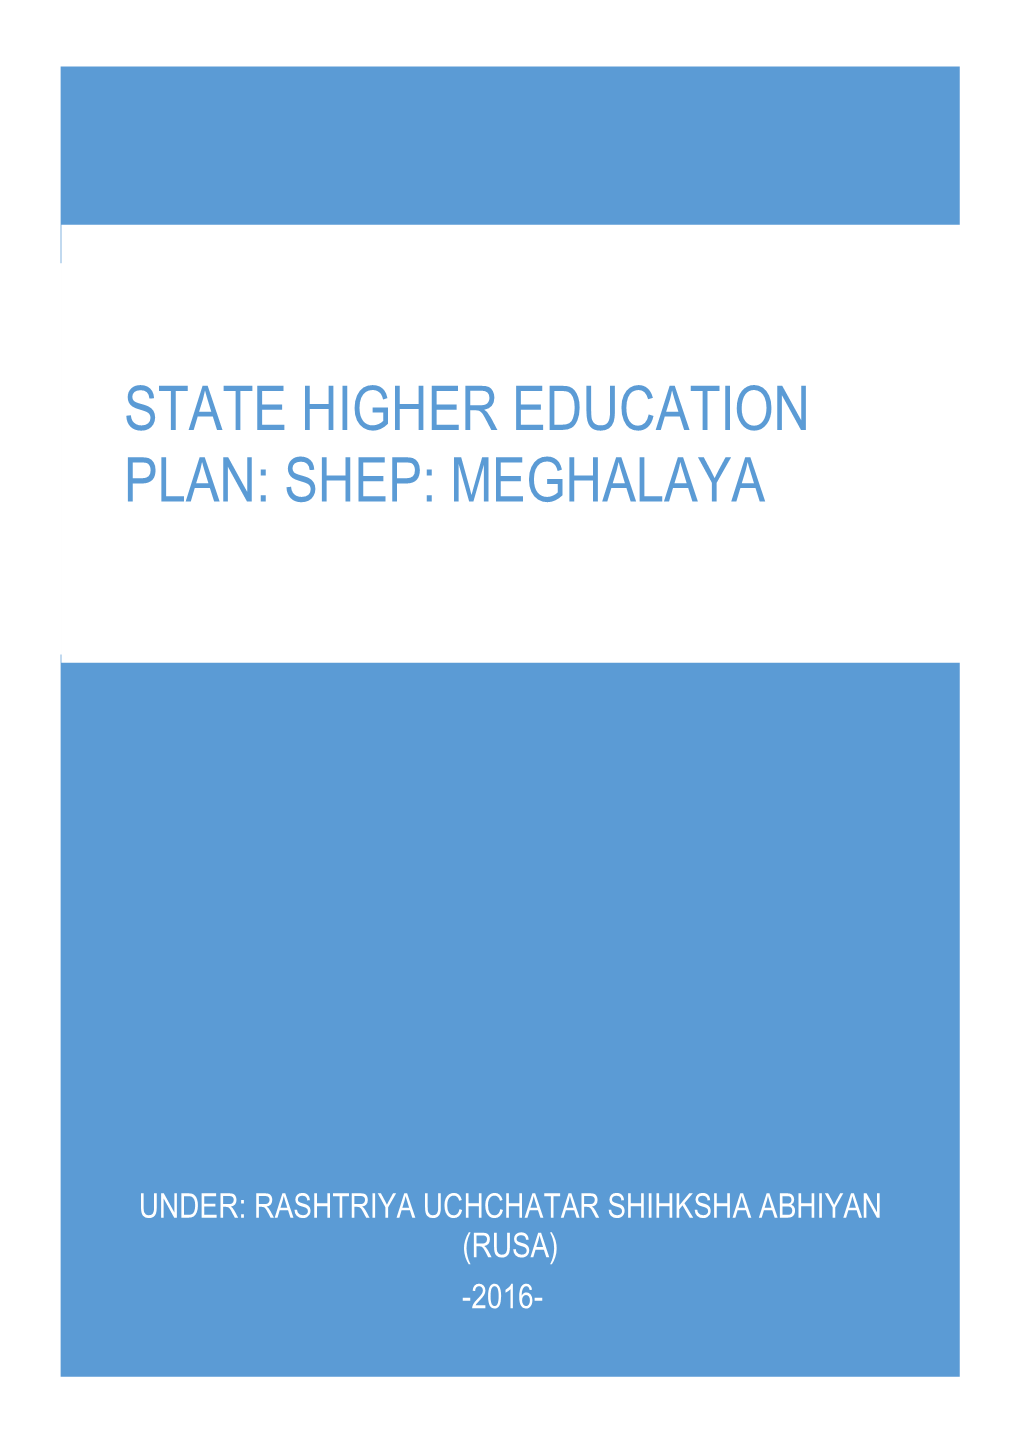 State Higher Education Plan: Shep: Meghalaya